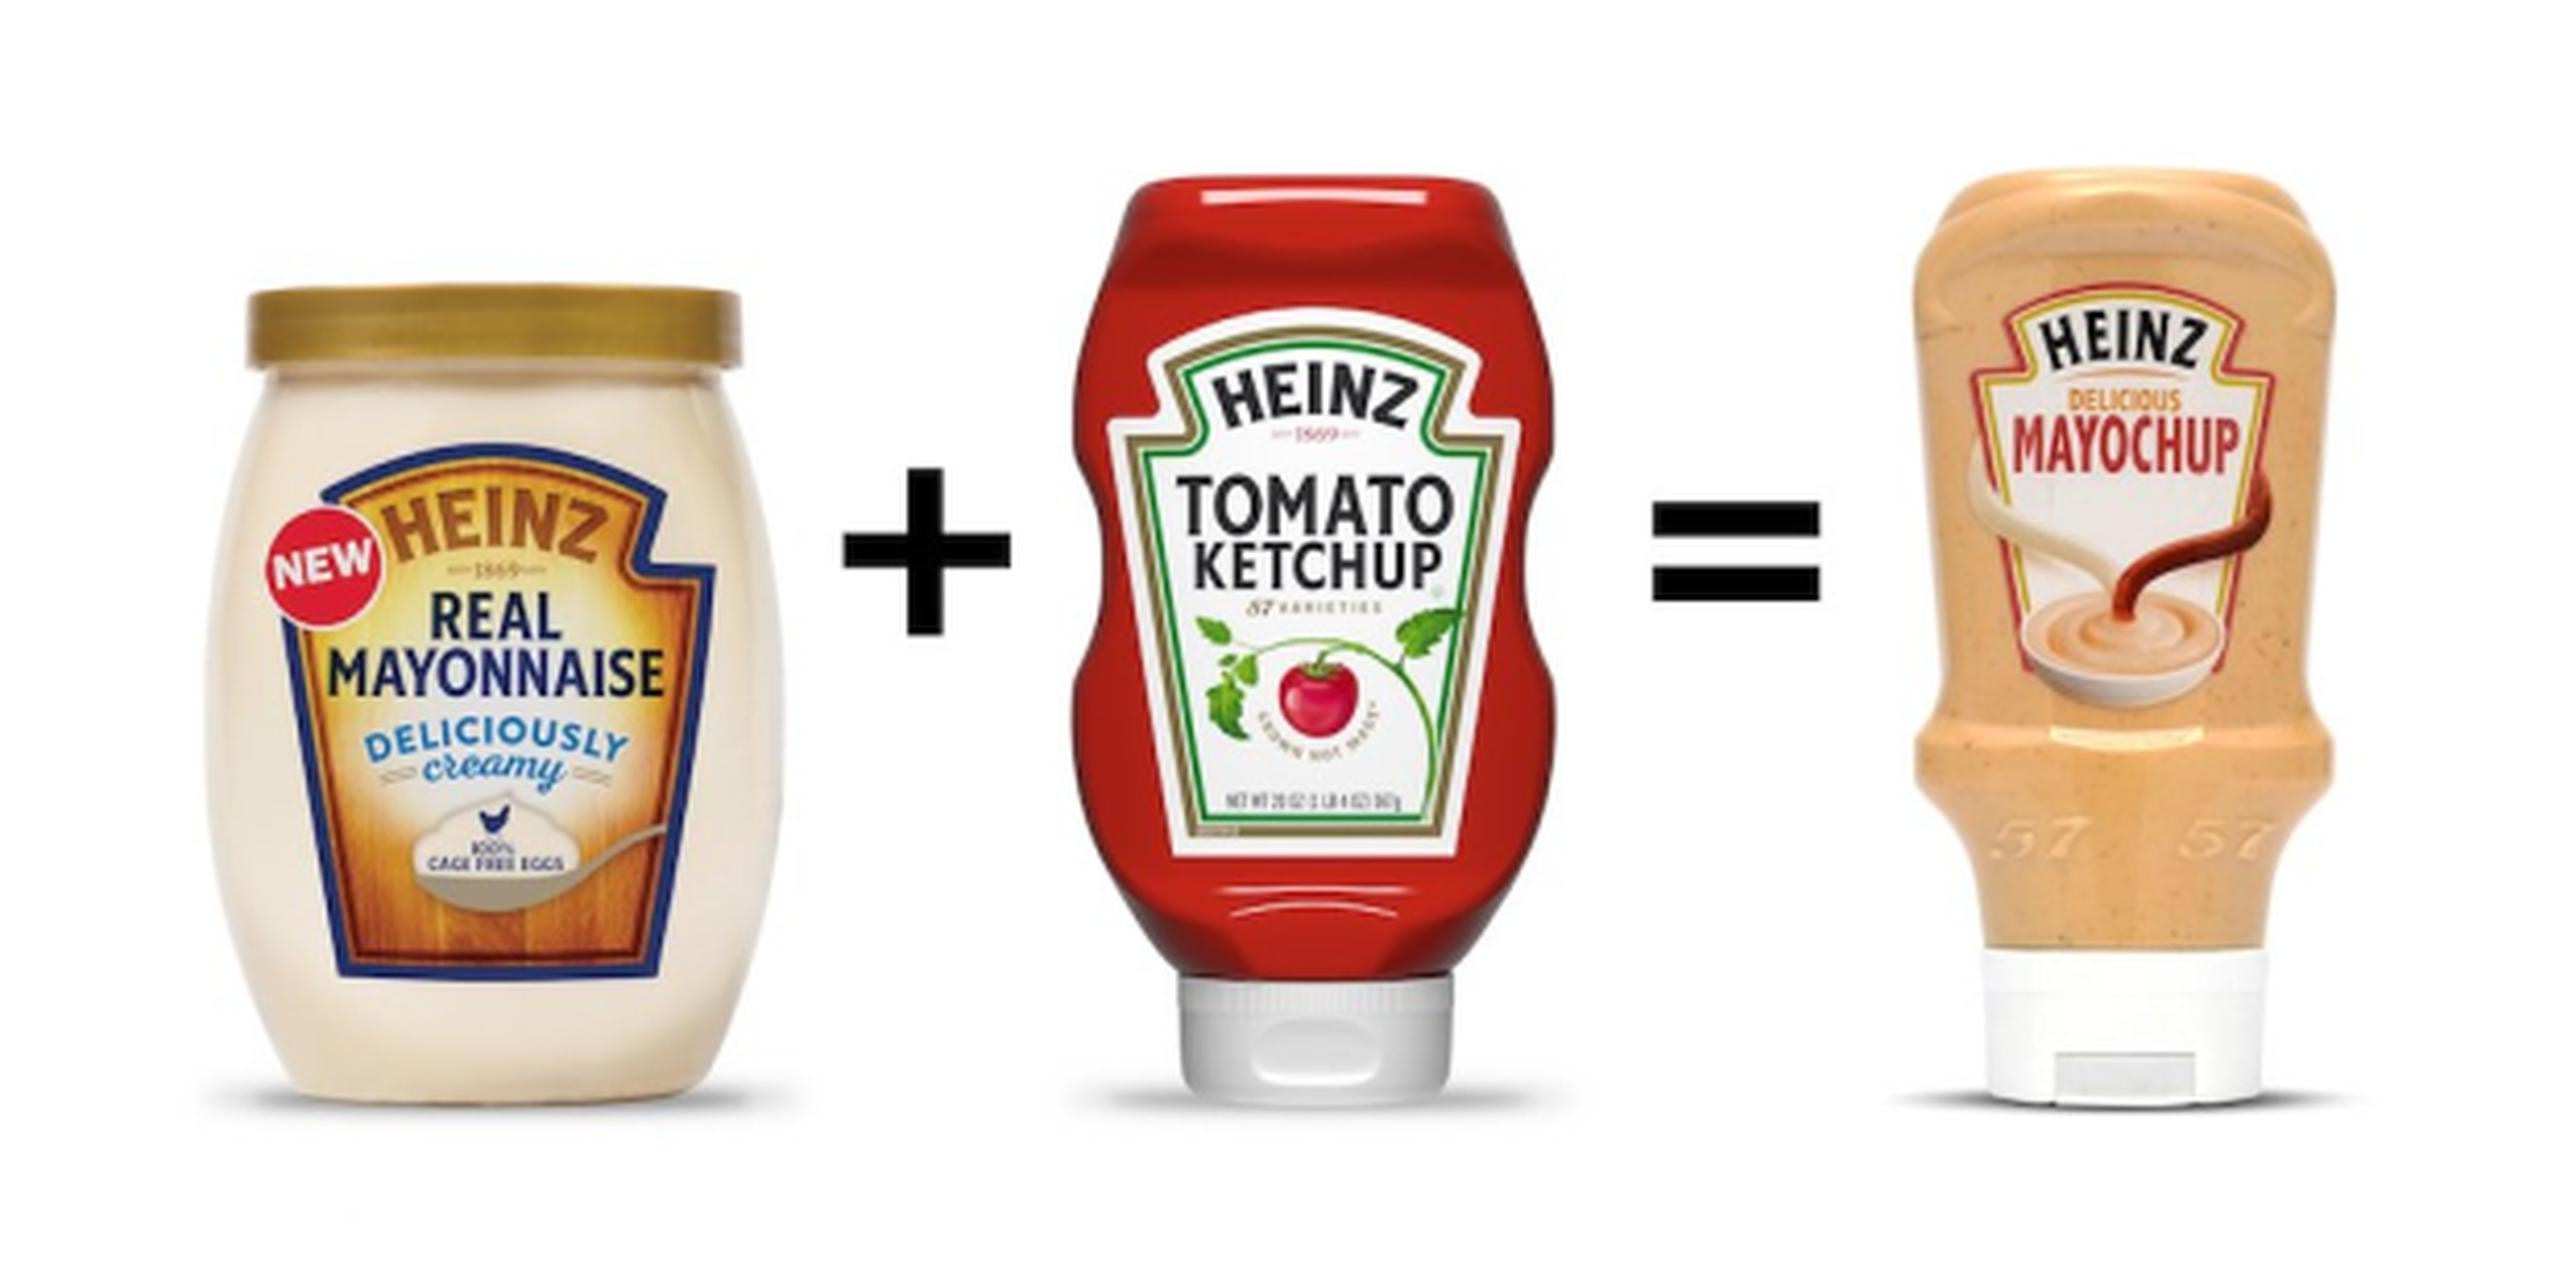 Mayochup es fabricado por la empresa Heinz. (Twitter / @HeinzKetchup_US)